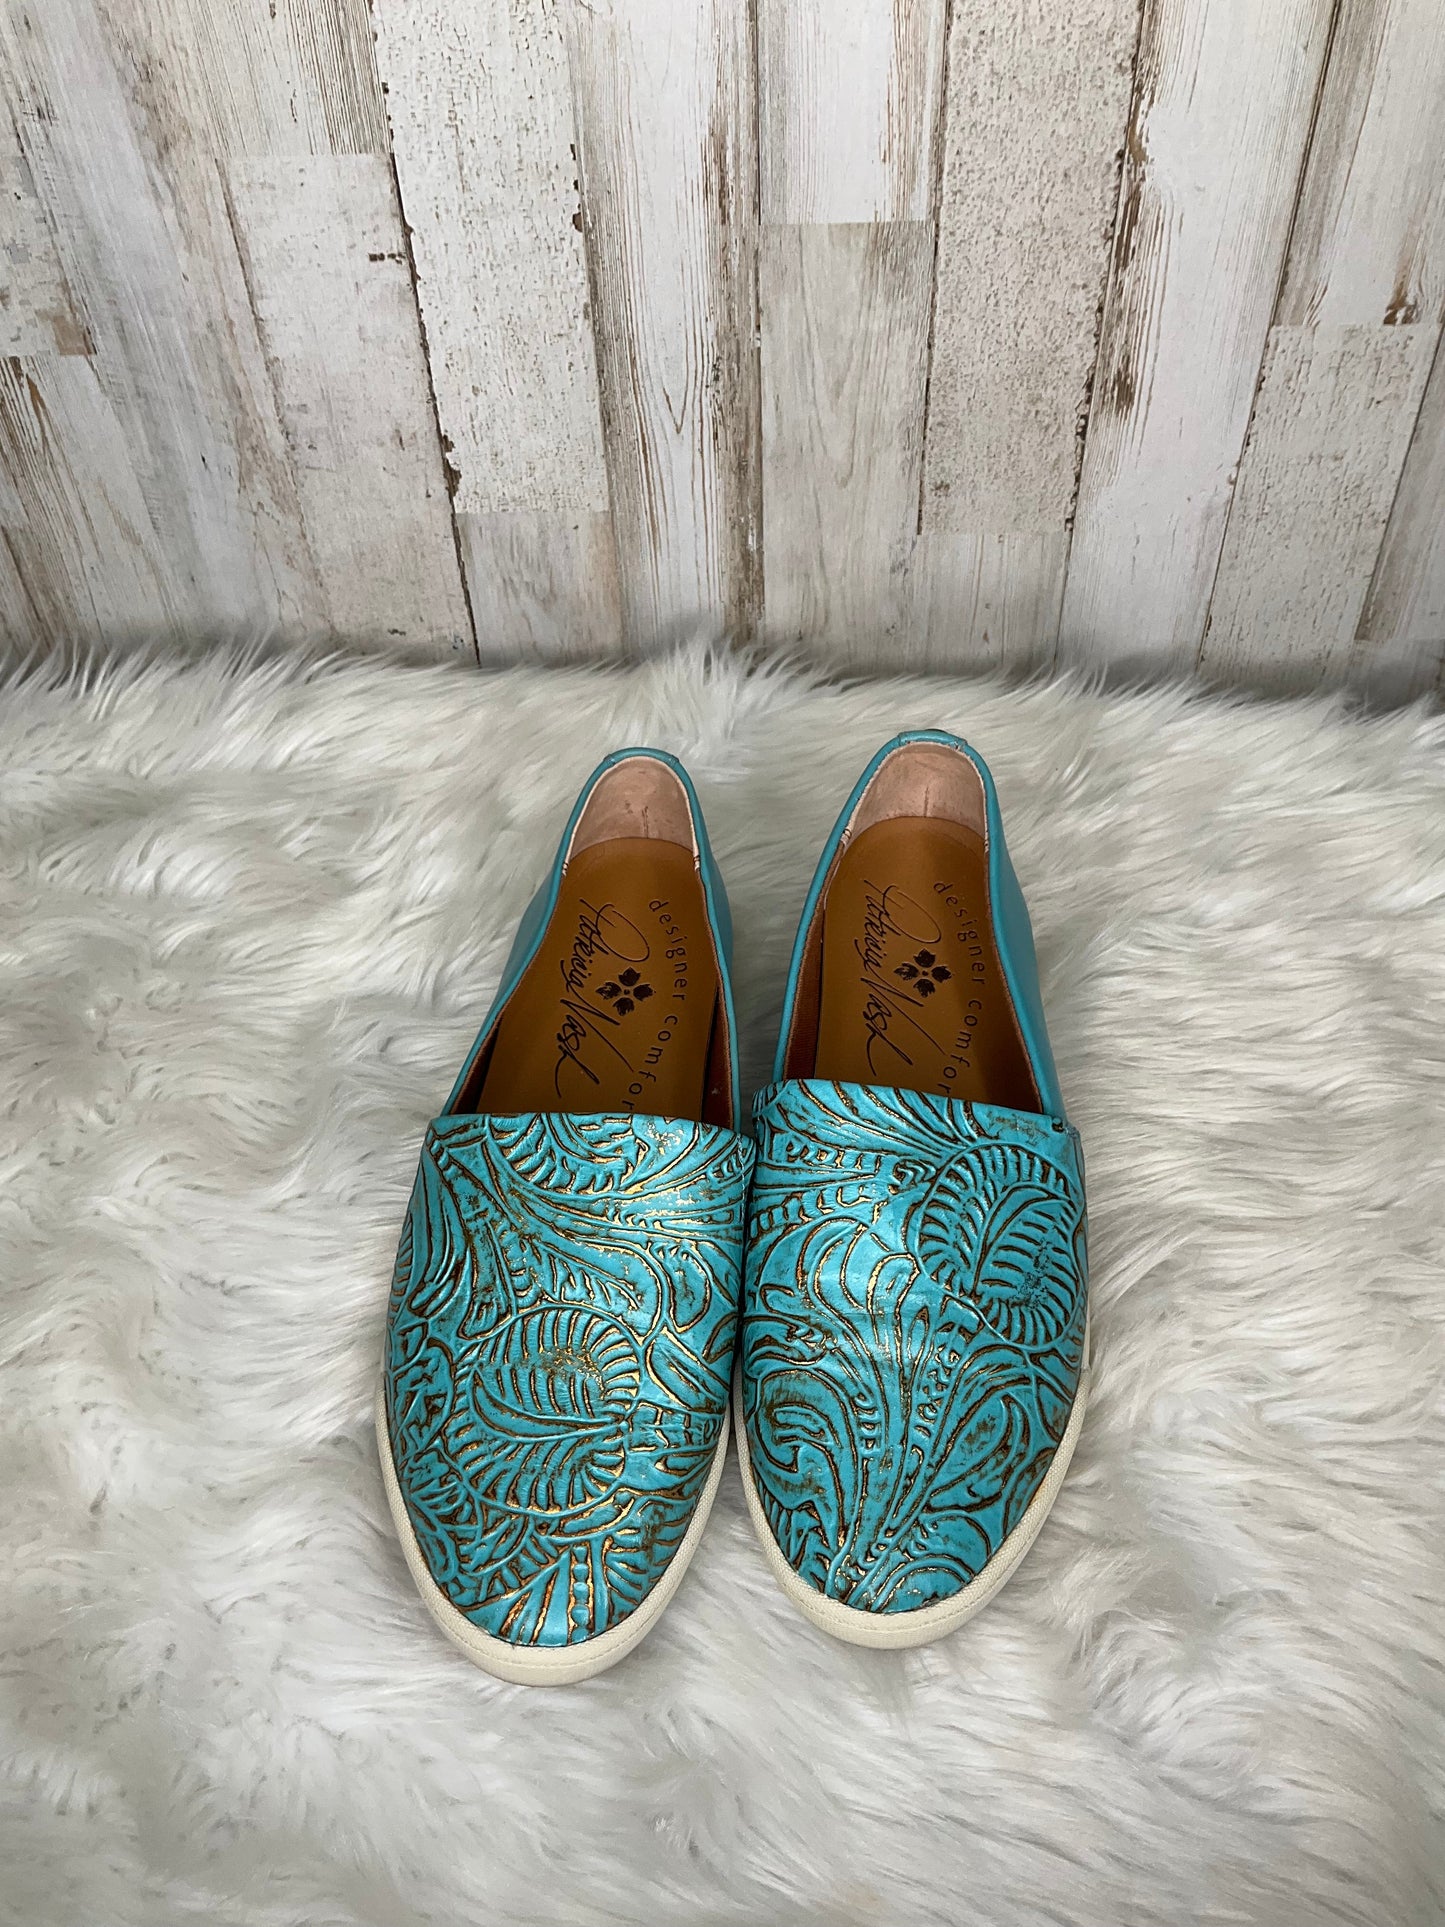 Blue Shoes Flats Patricia Nash, Size 7.5